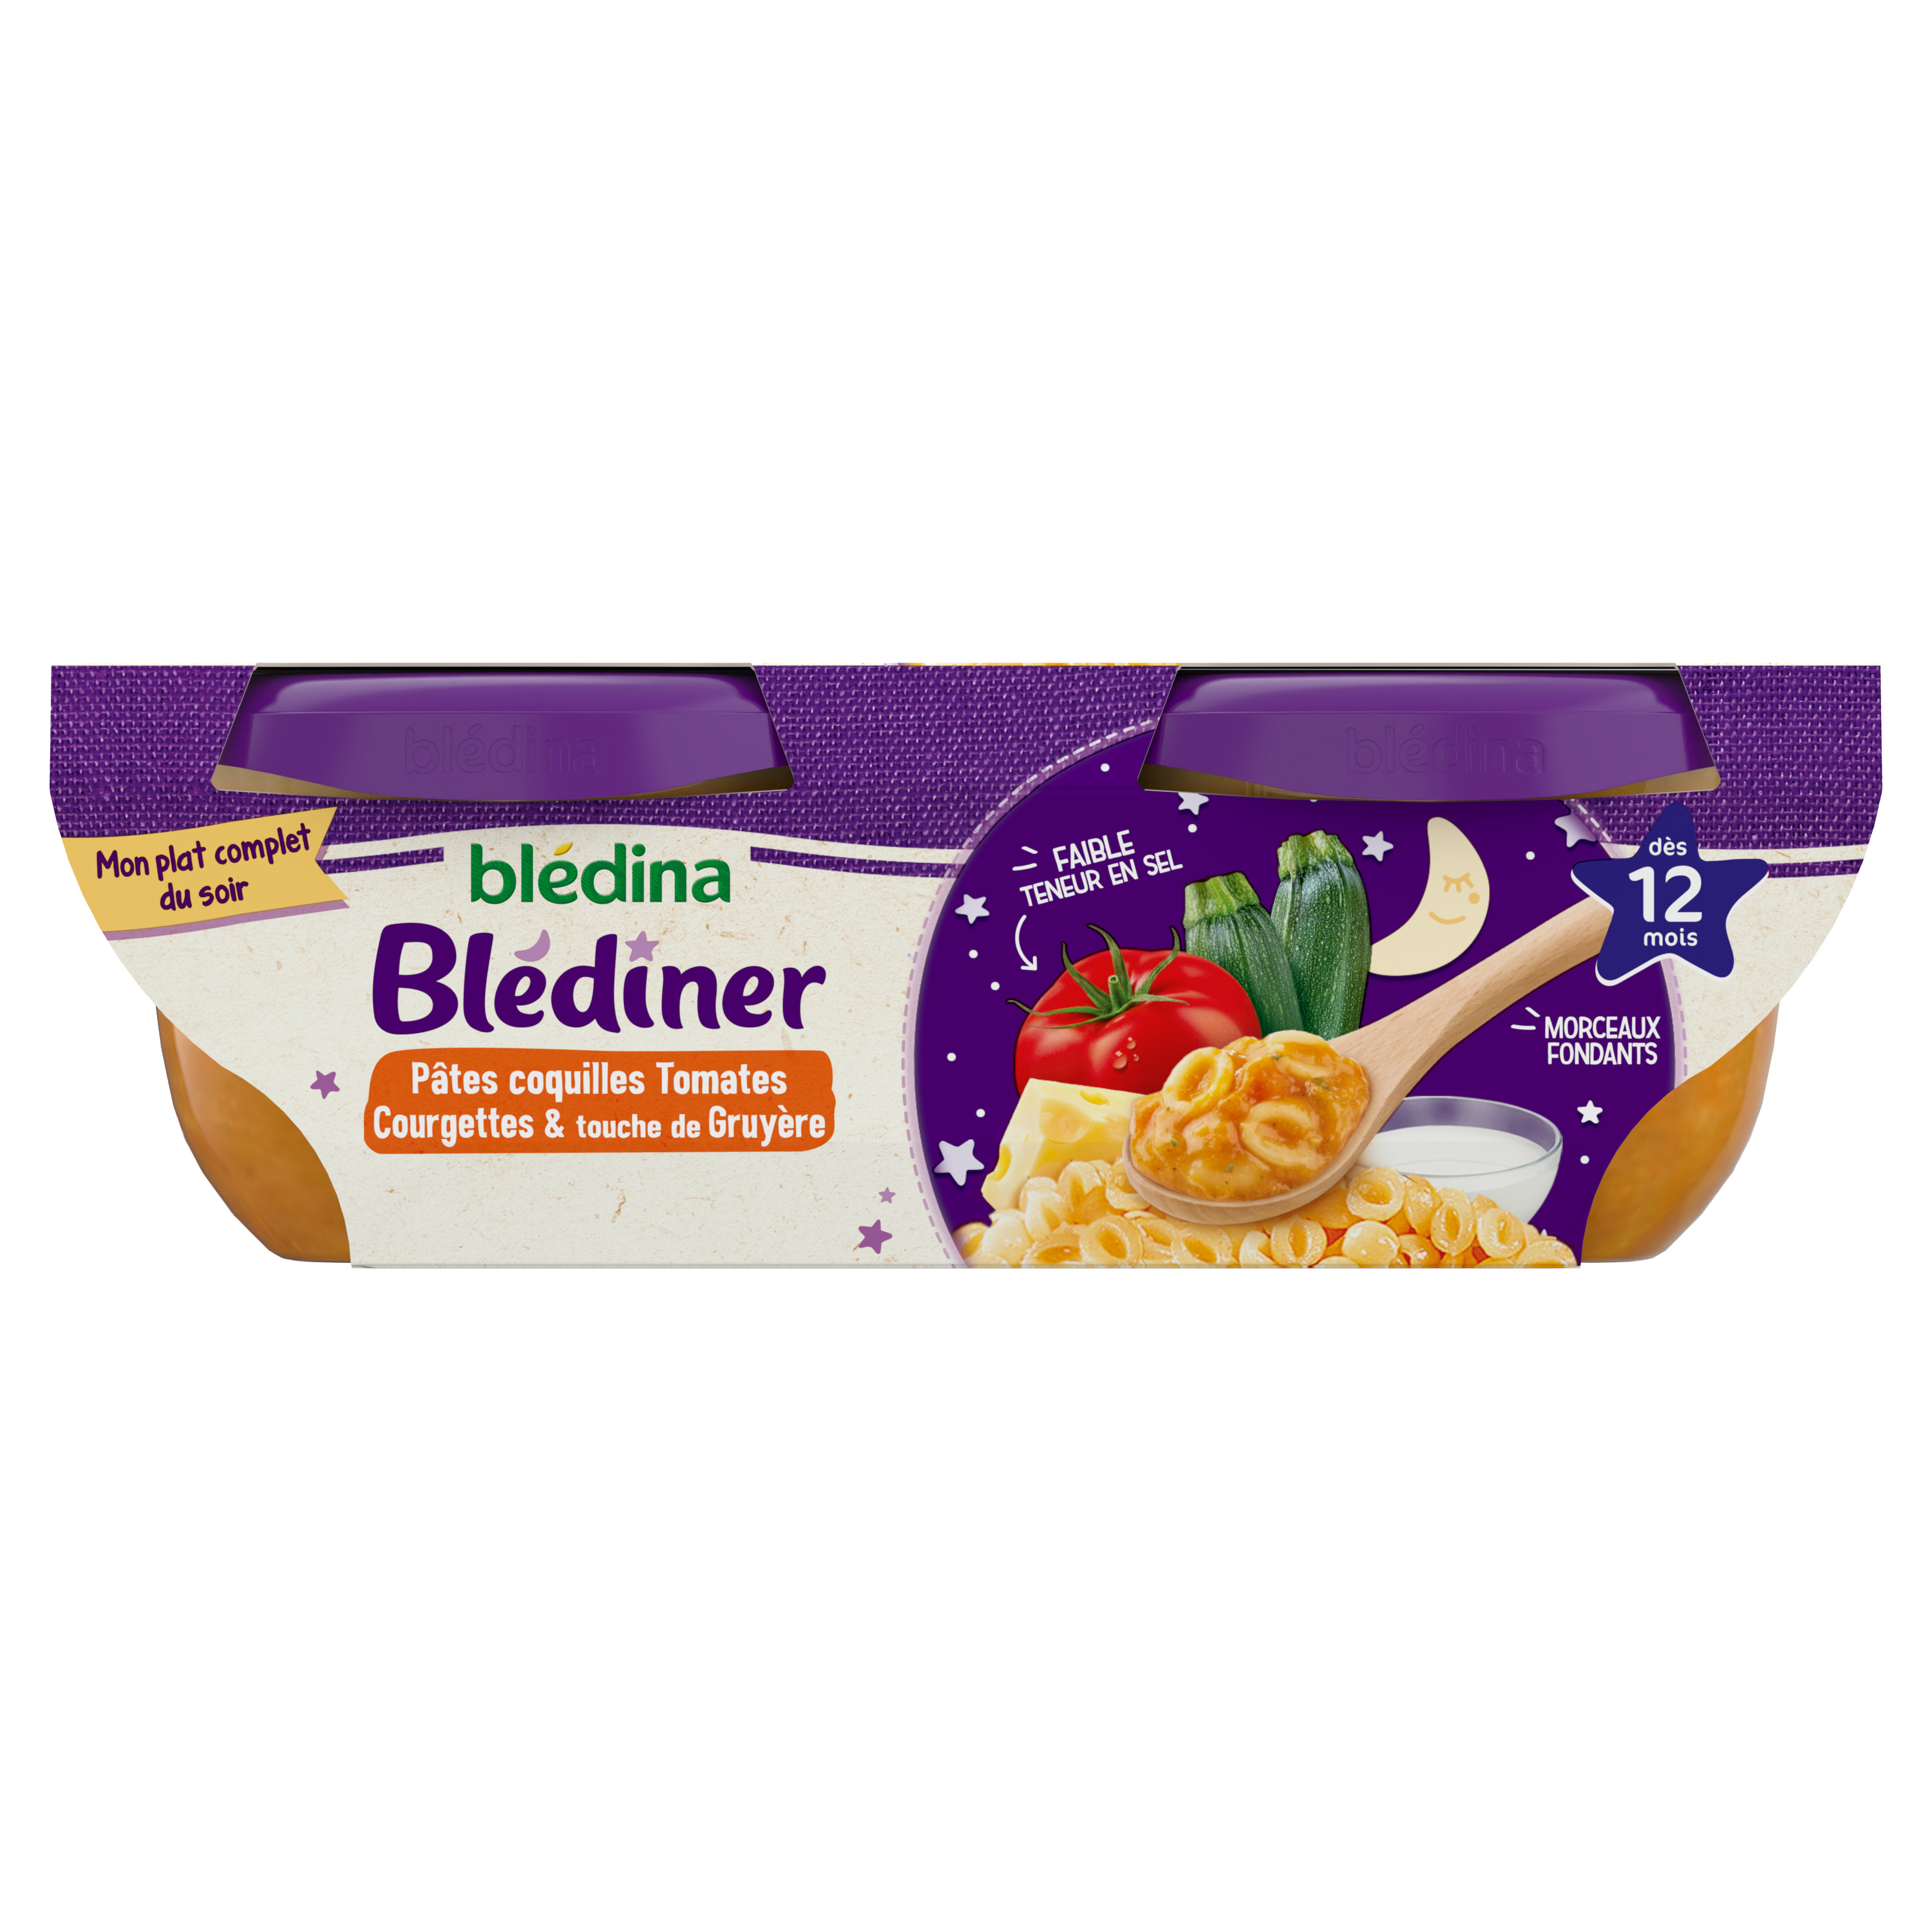 BLEDINA Blédidej céréales lactées biscuité vanille dès 12 mois 4x250ml pas  cher 